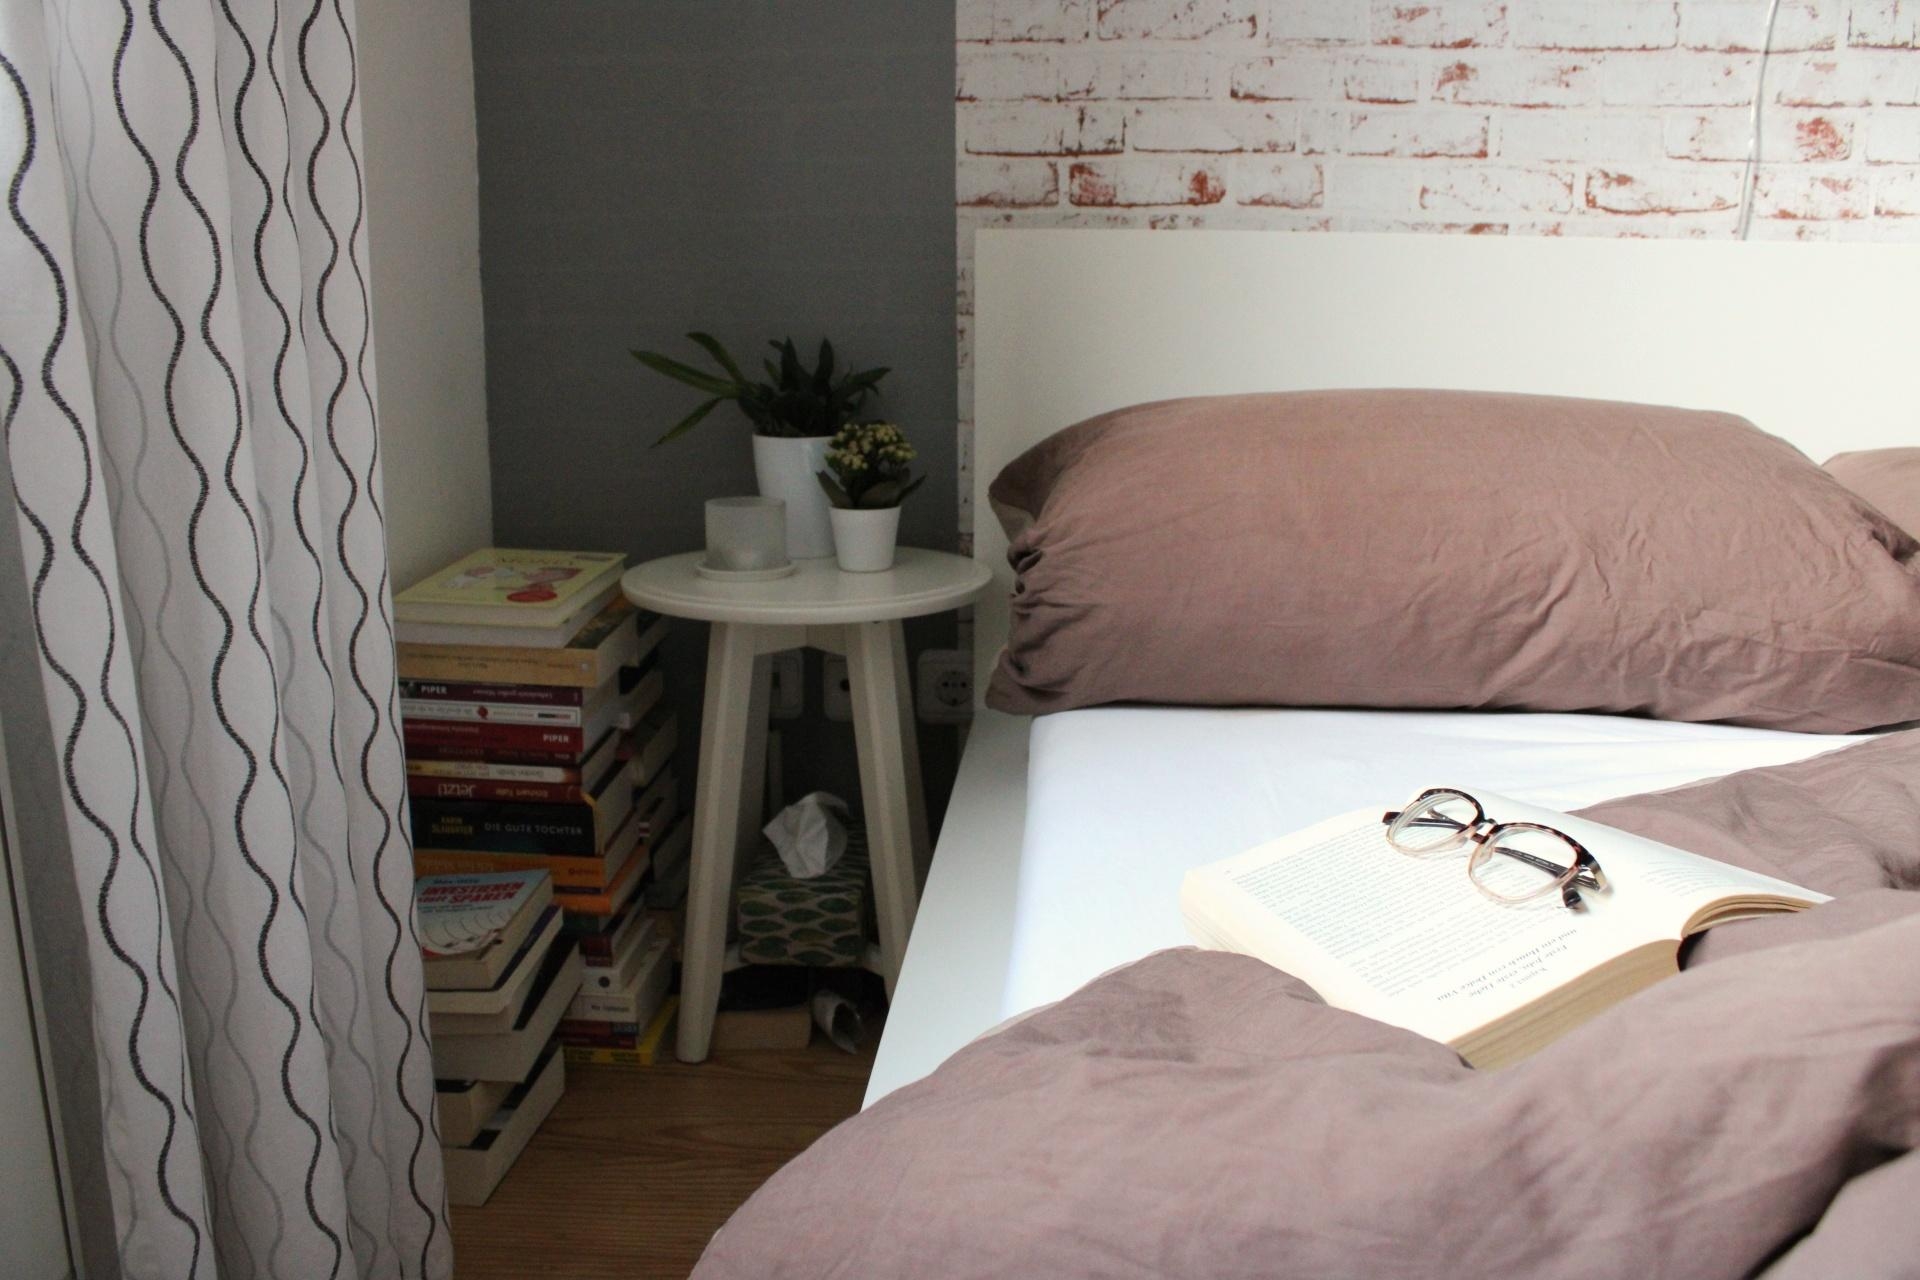 Entscheidungshilfe: Aufstehen oder Buch lesen? #schlafzimmer #bett #bettwäsche #cozy